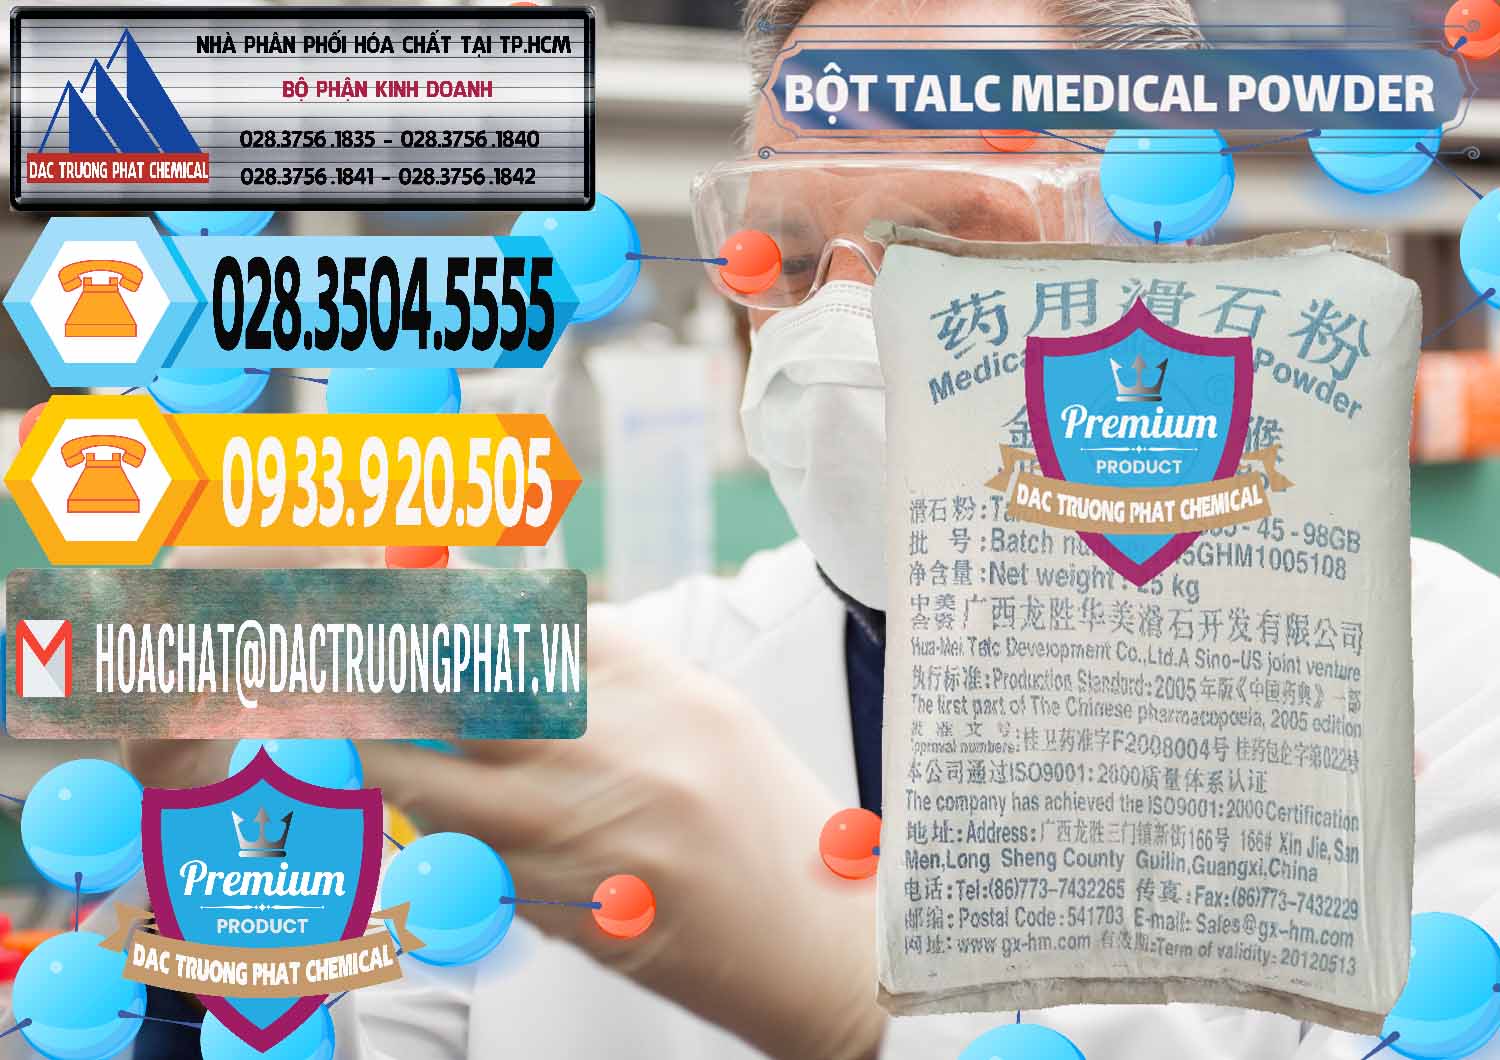 Công ty nhập khẩu và bán Bột Talc Medical Powder Trung Quốc China - 0036 - Nơi phân phối & cung cấp hóa chất tại TP.HCM - hoachattayrua.net